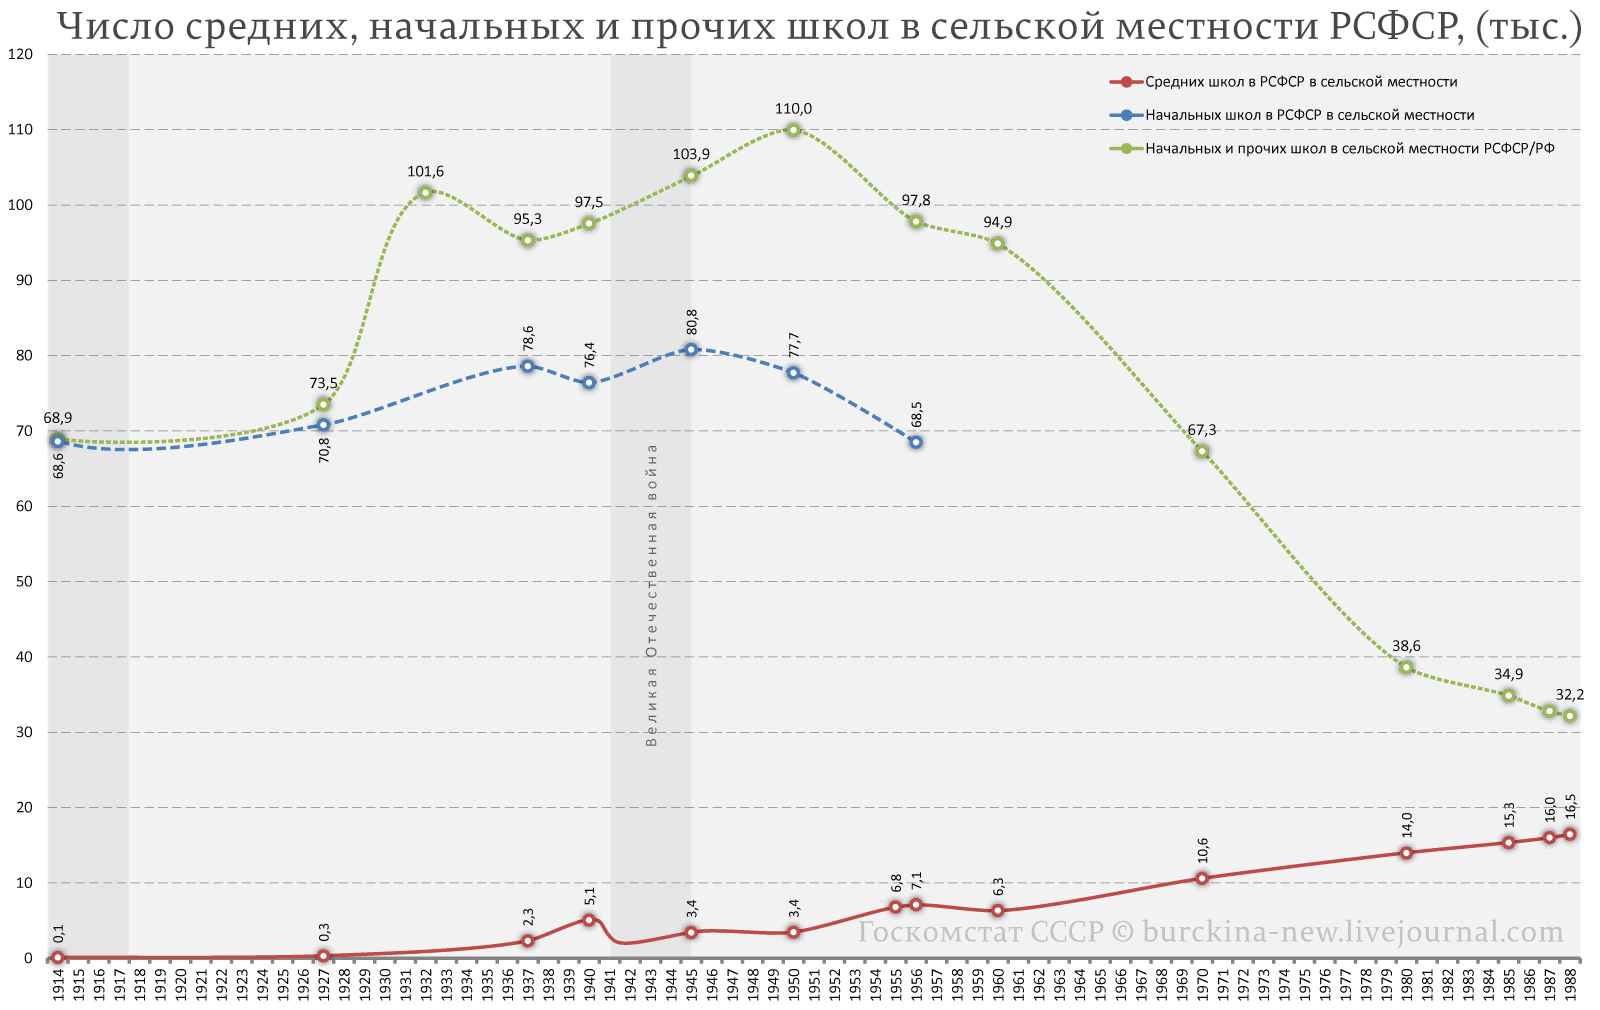 О причинах сокращения числа школ в 50-60-е годы и при Путине 